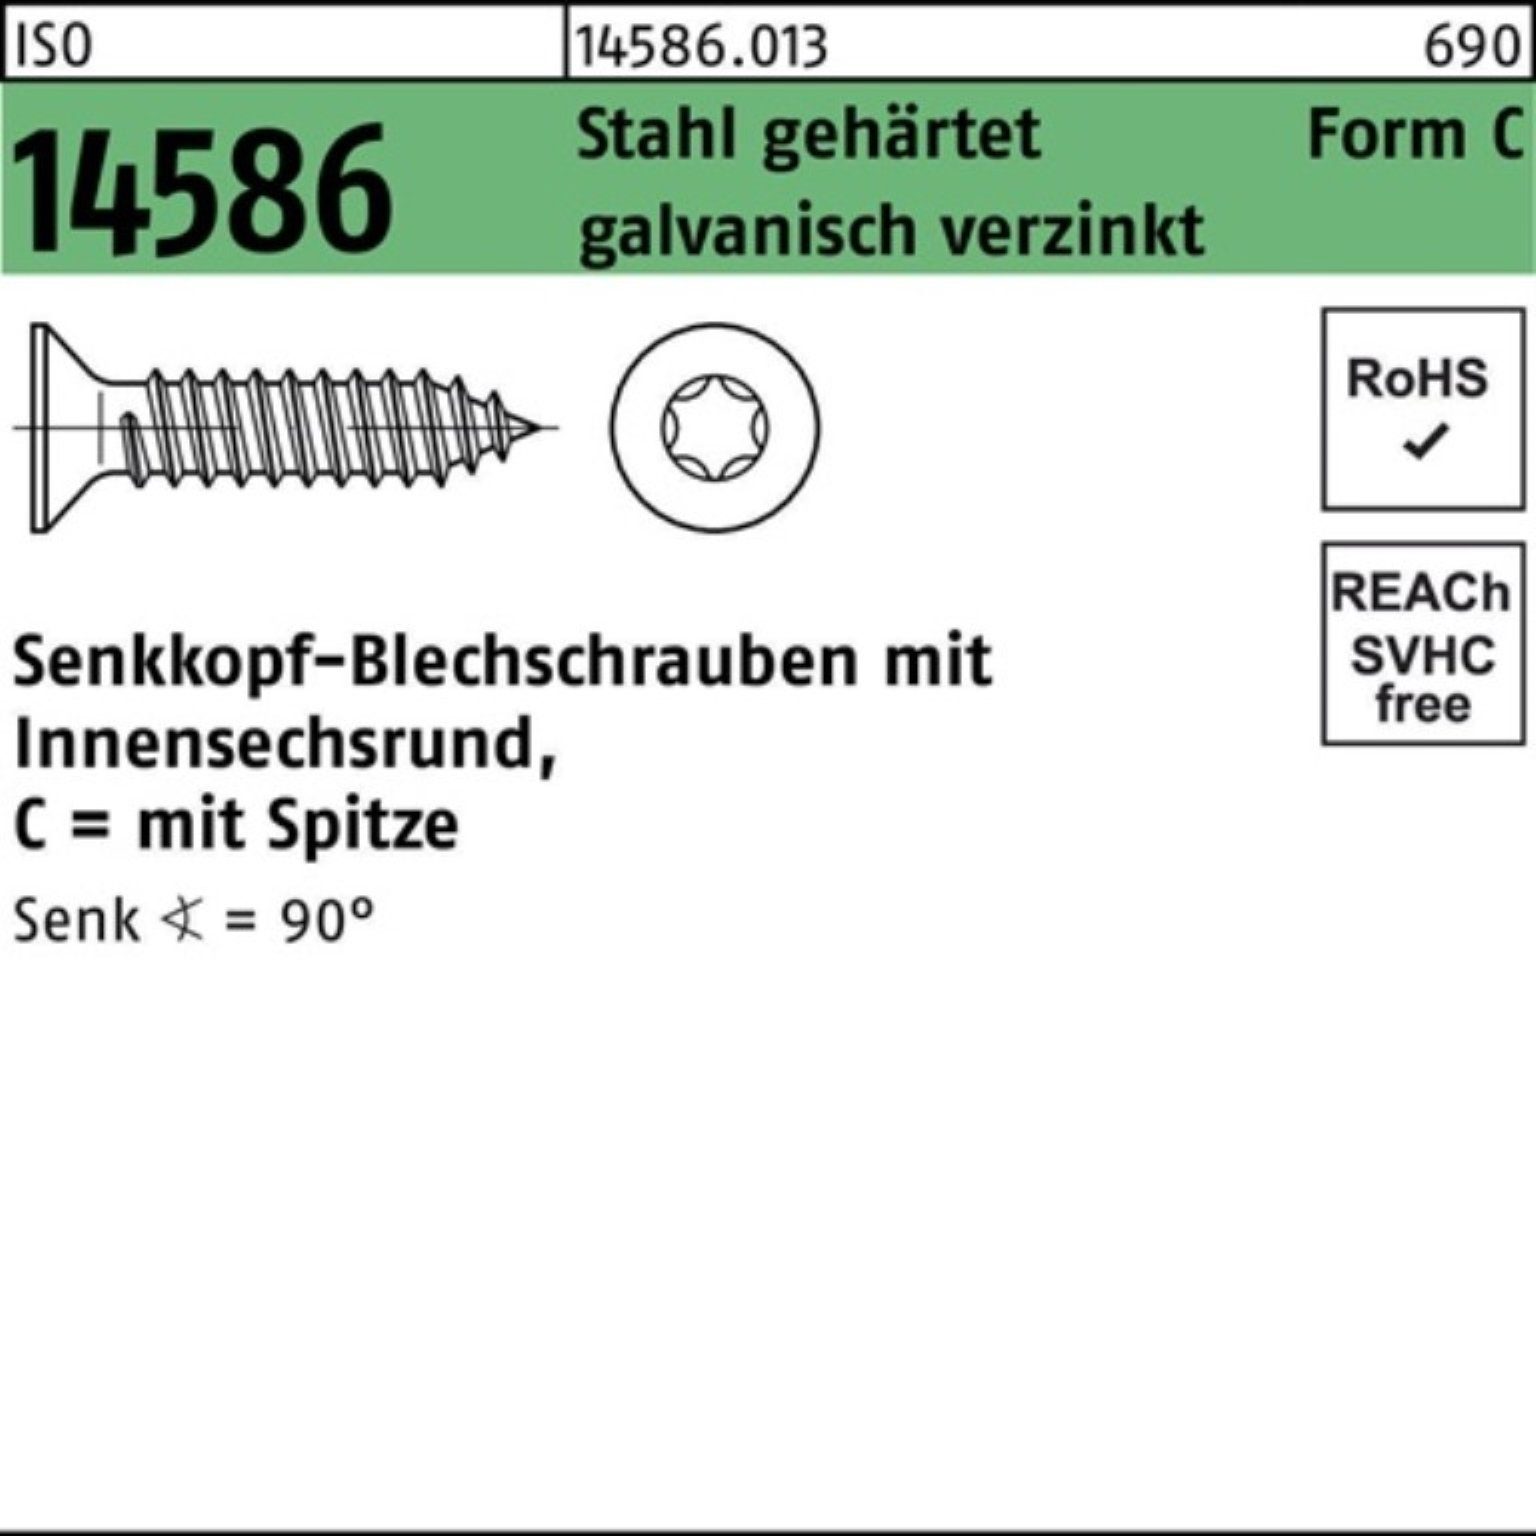 Pack Schraube Reyher 5,5x ISO -C 500er ISR/Spitze geh 25 14586 Stahl Senkblechschraube